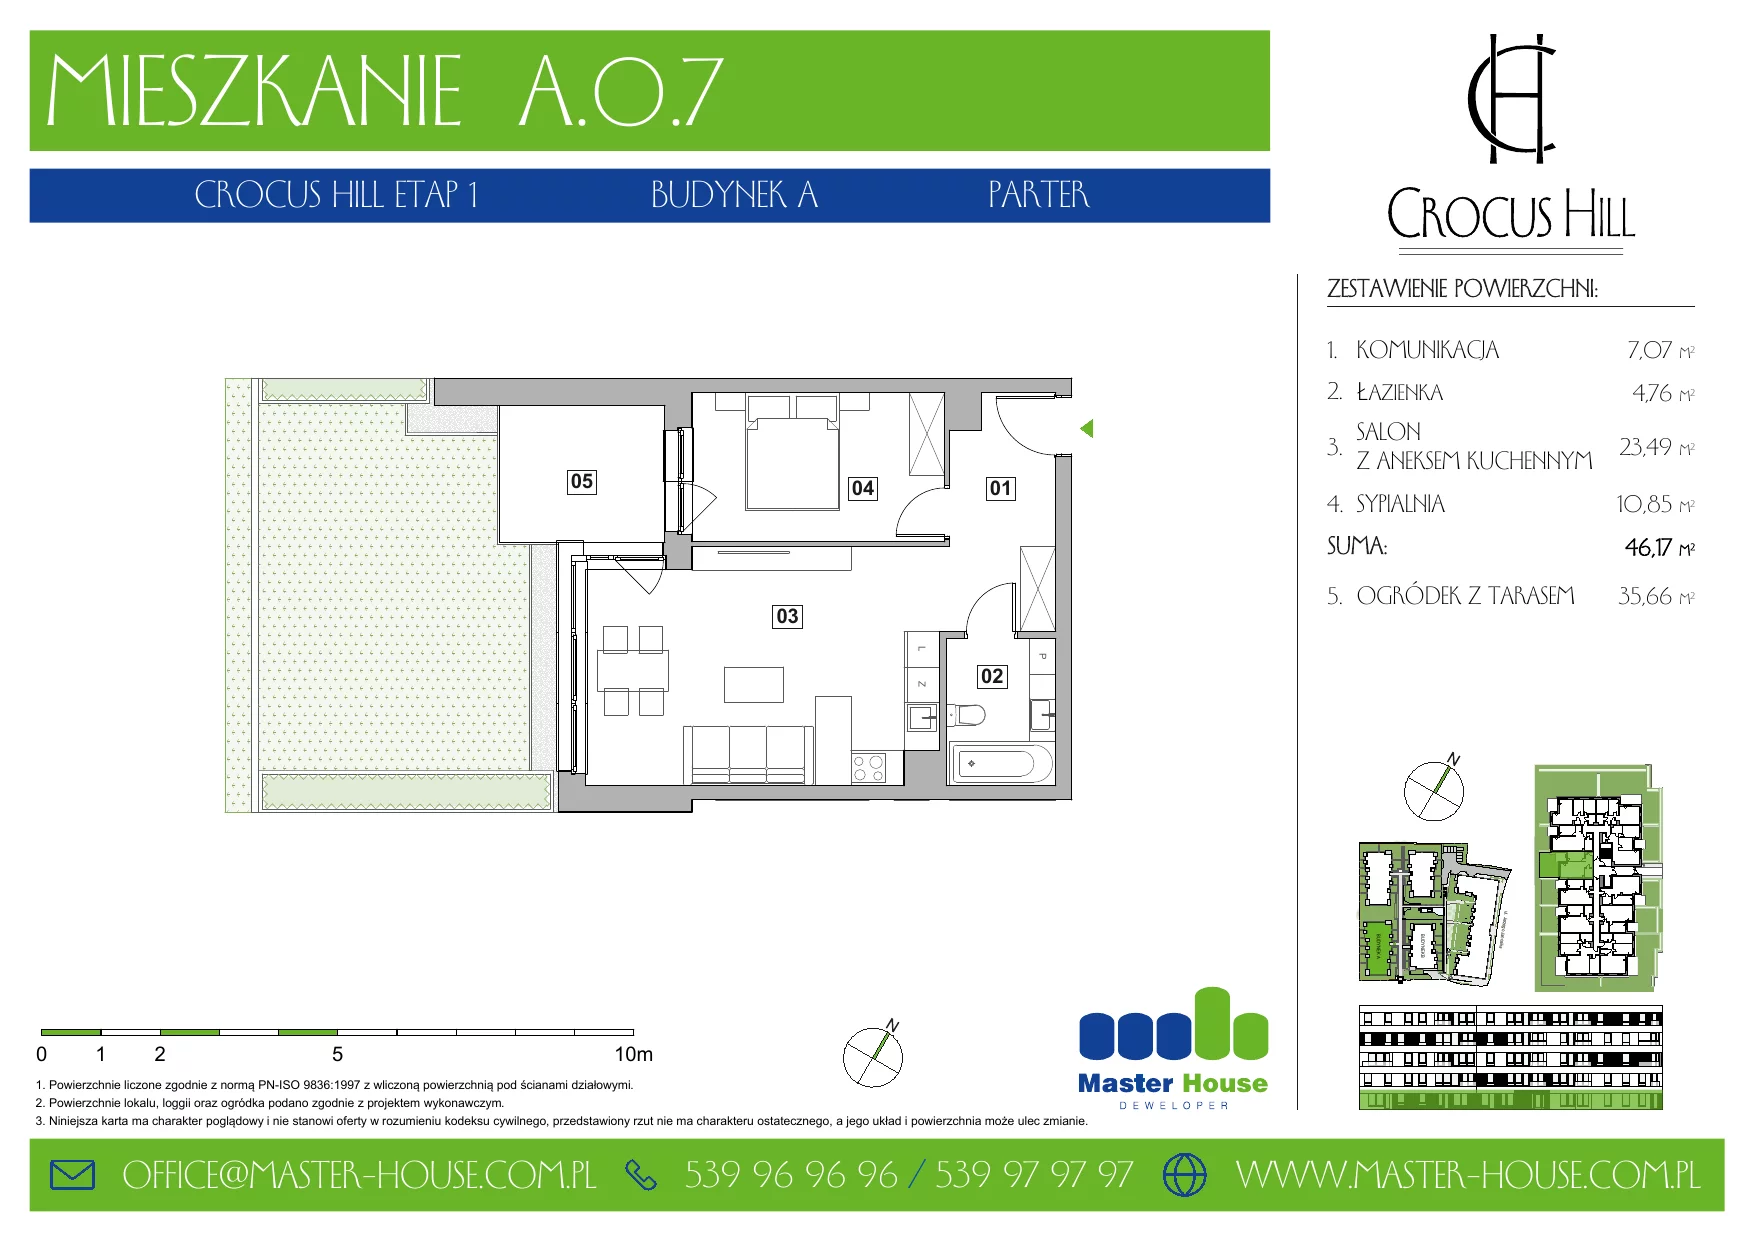 Mieszkanie 46,17 m², parter, oferta nr A.0.7, Crocus Hill, Szczecin, Śródmieście, ul. Jerzego Janosika 2, 2A, 3, 3A